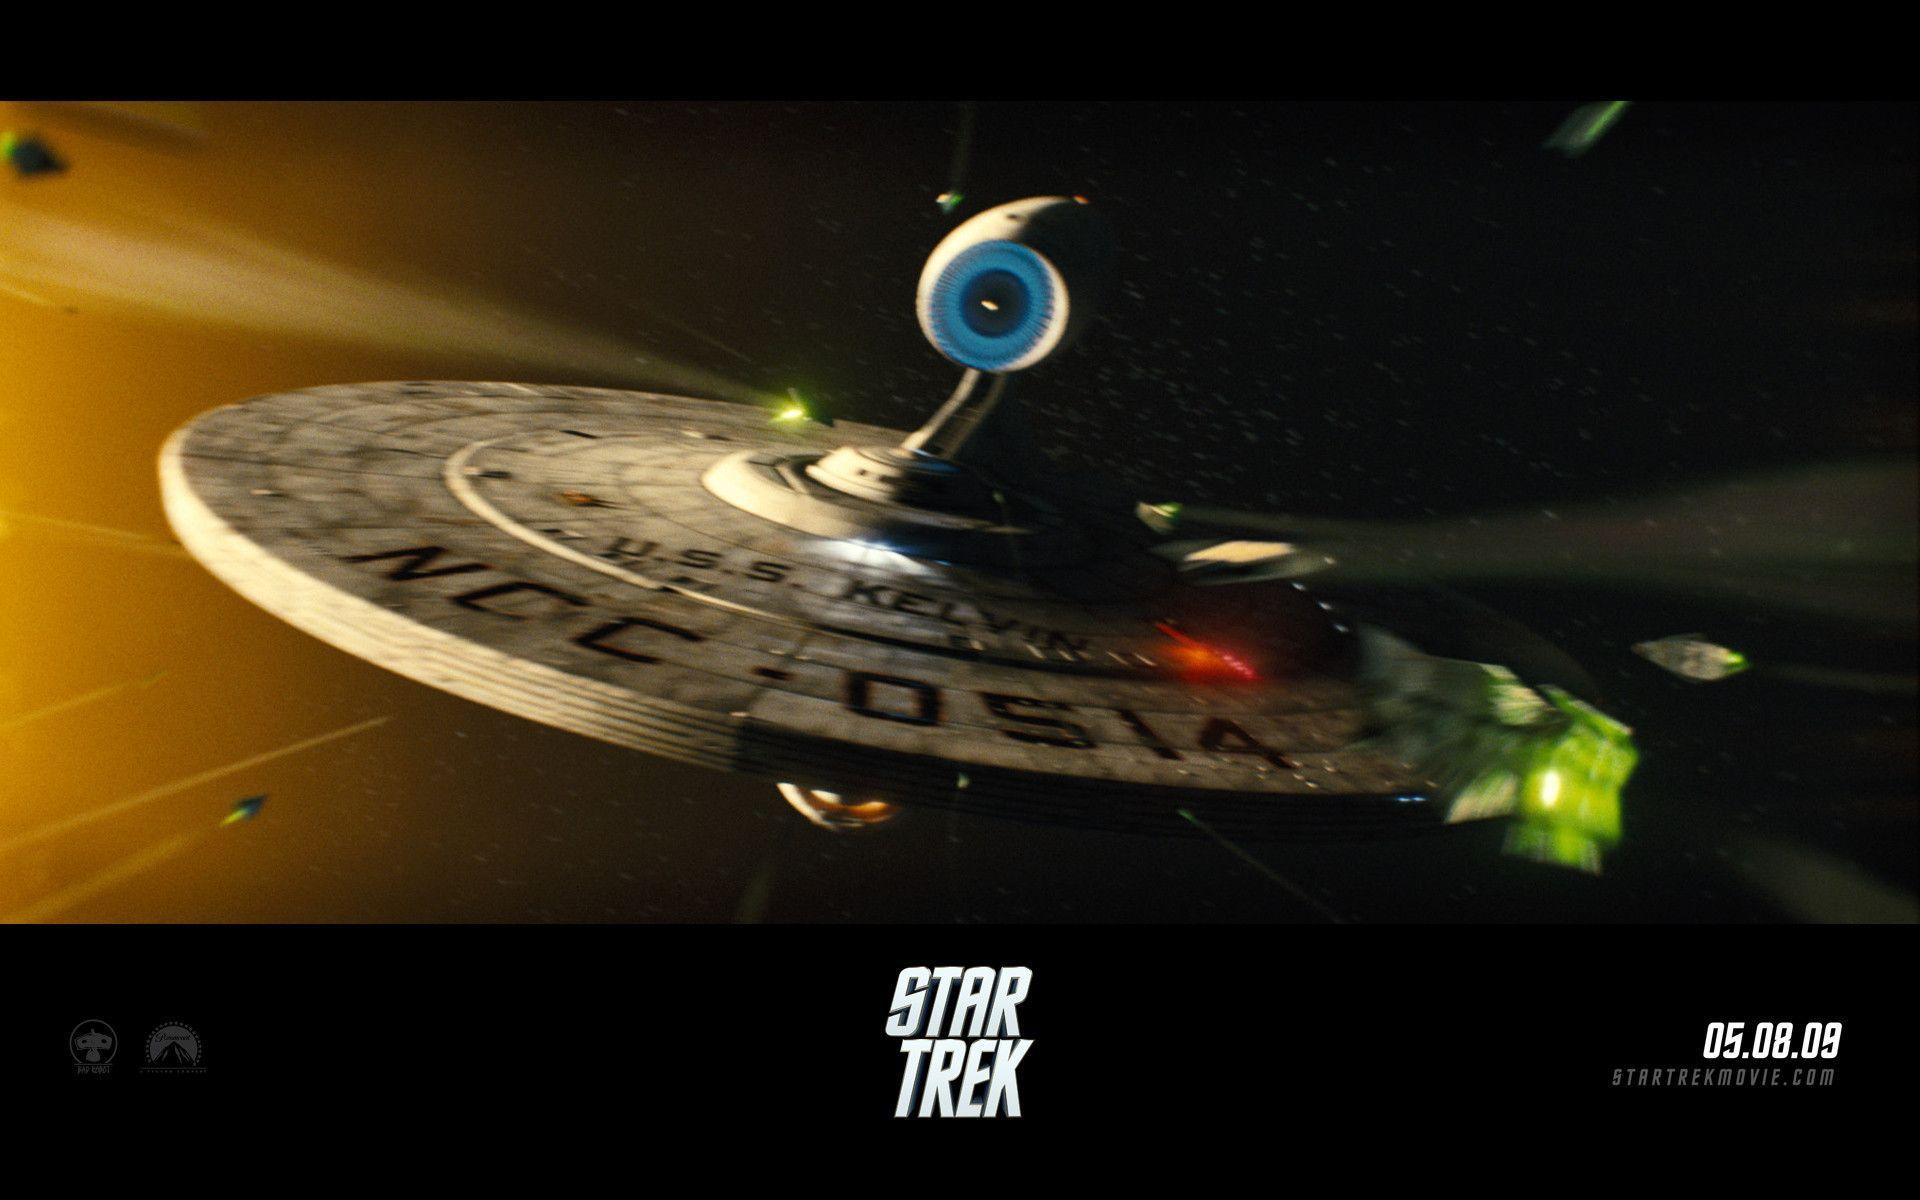 FilmEdge.net&;s Mission: Trek 2009. STAR TREK downloads